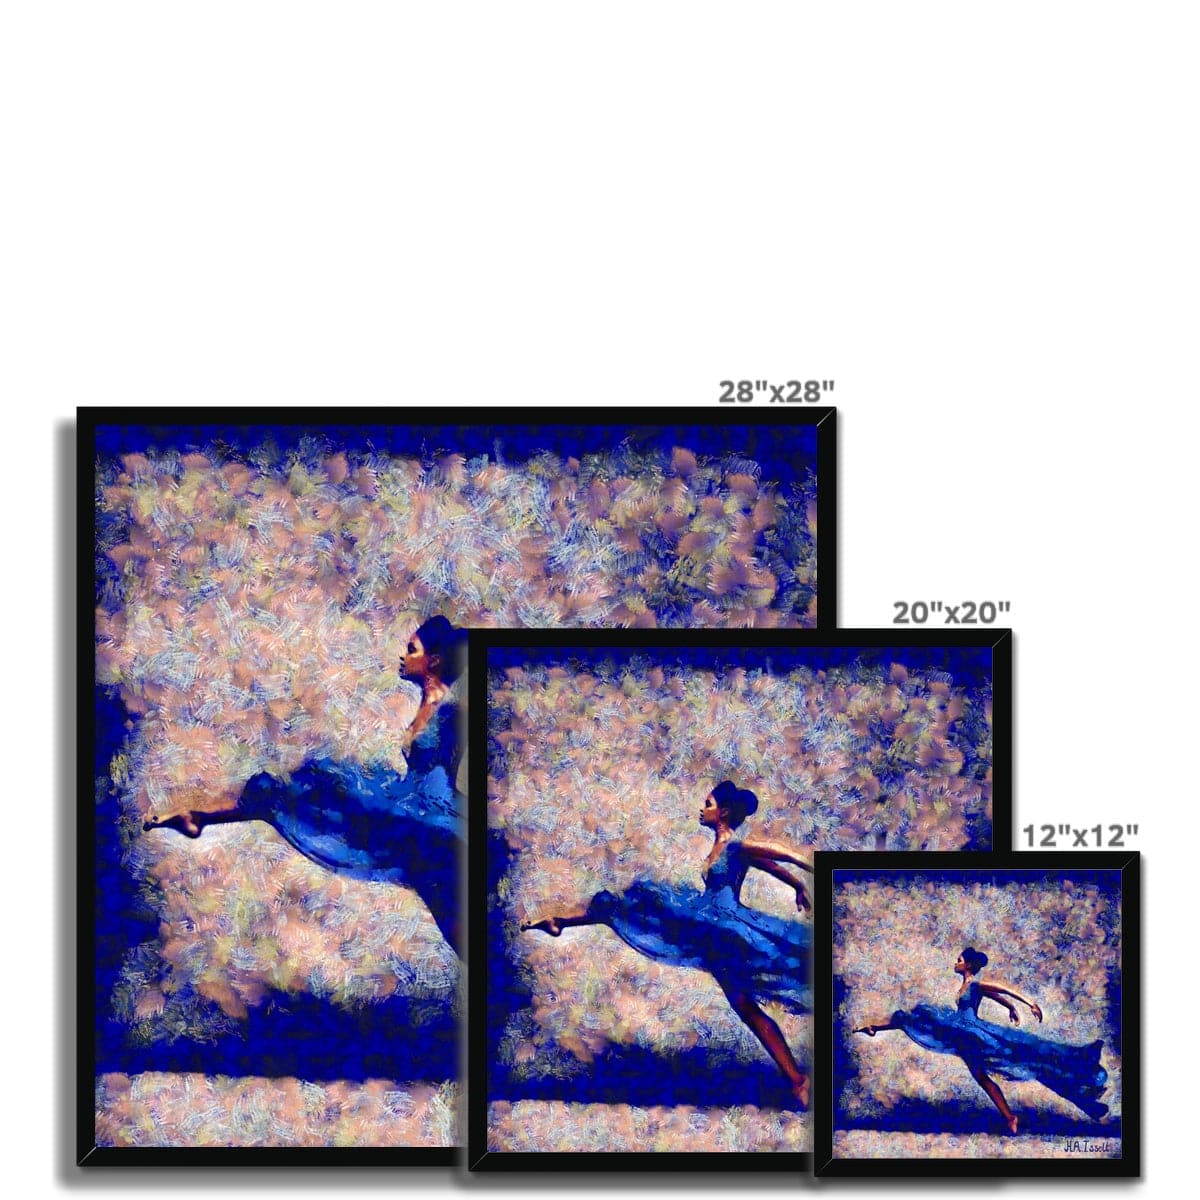 Dansa Moderna - Ballerina in Blue Framed Print